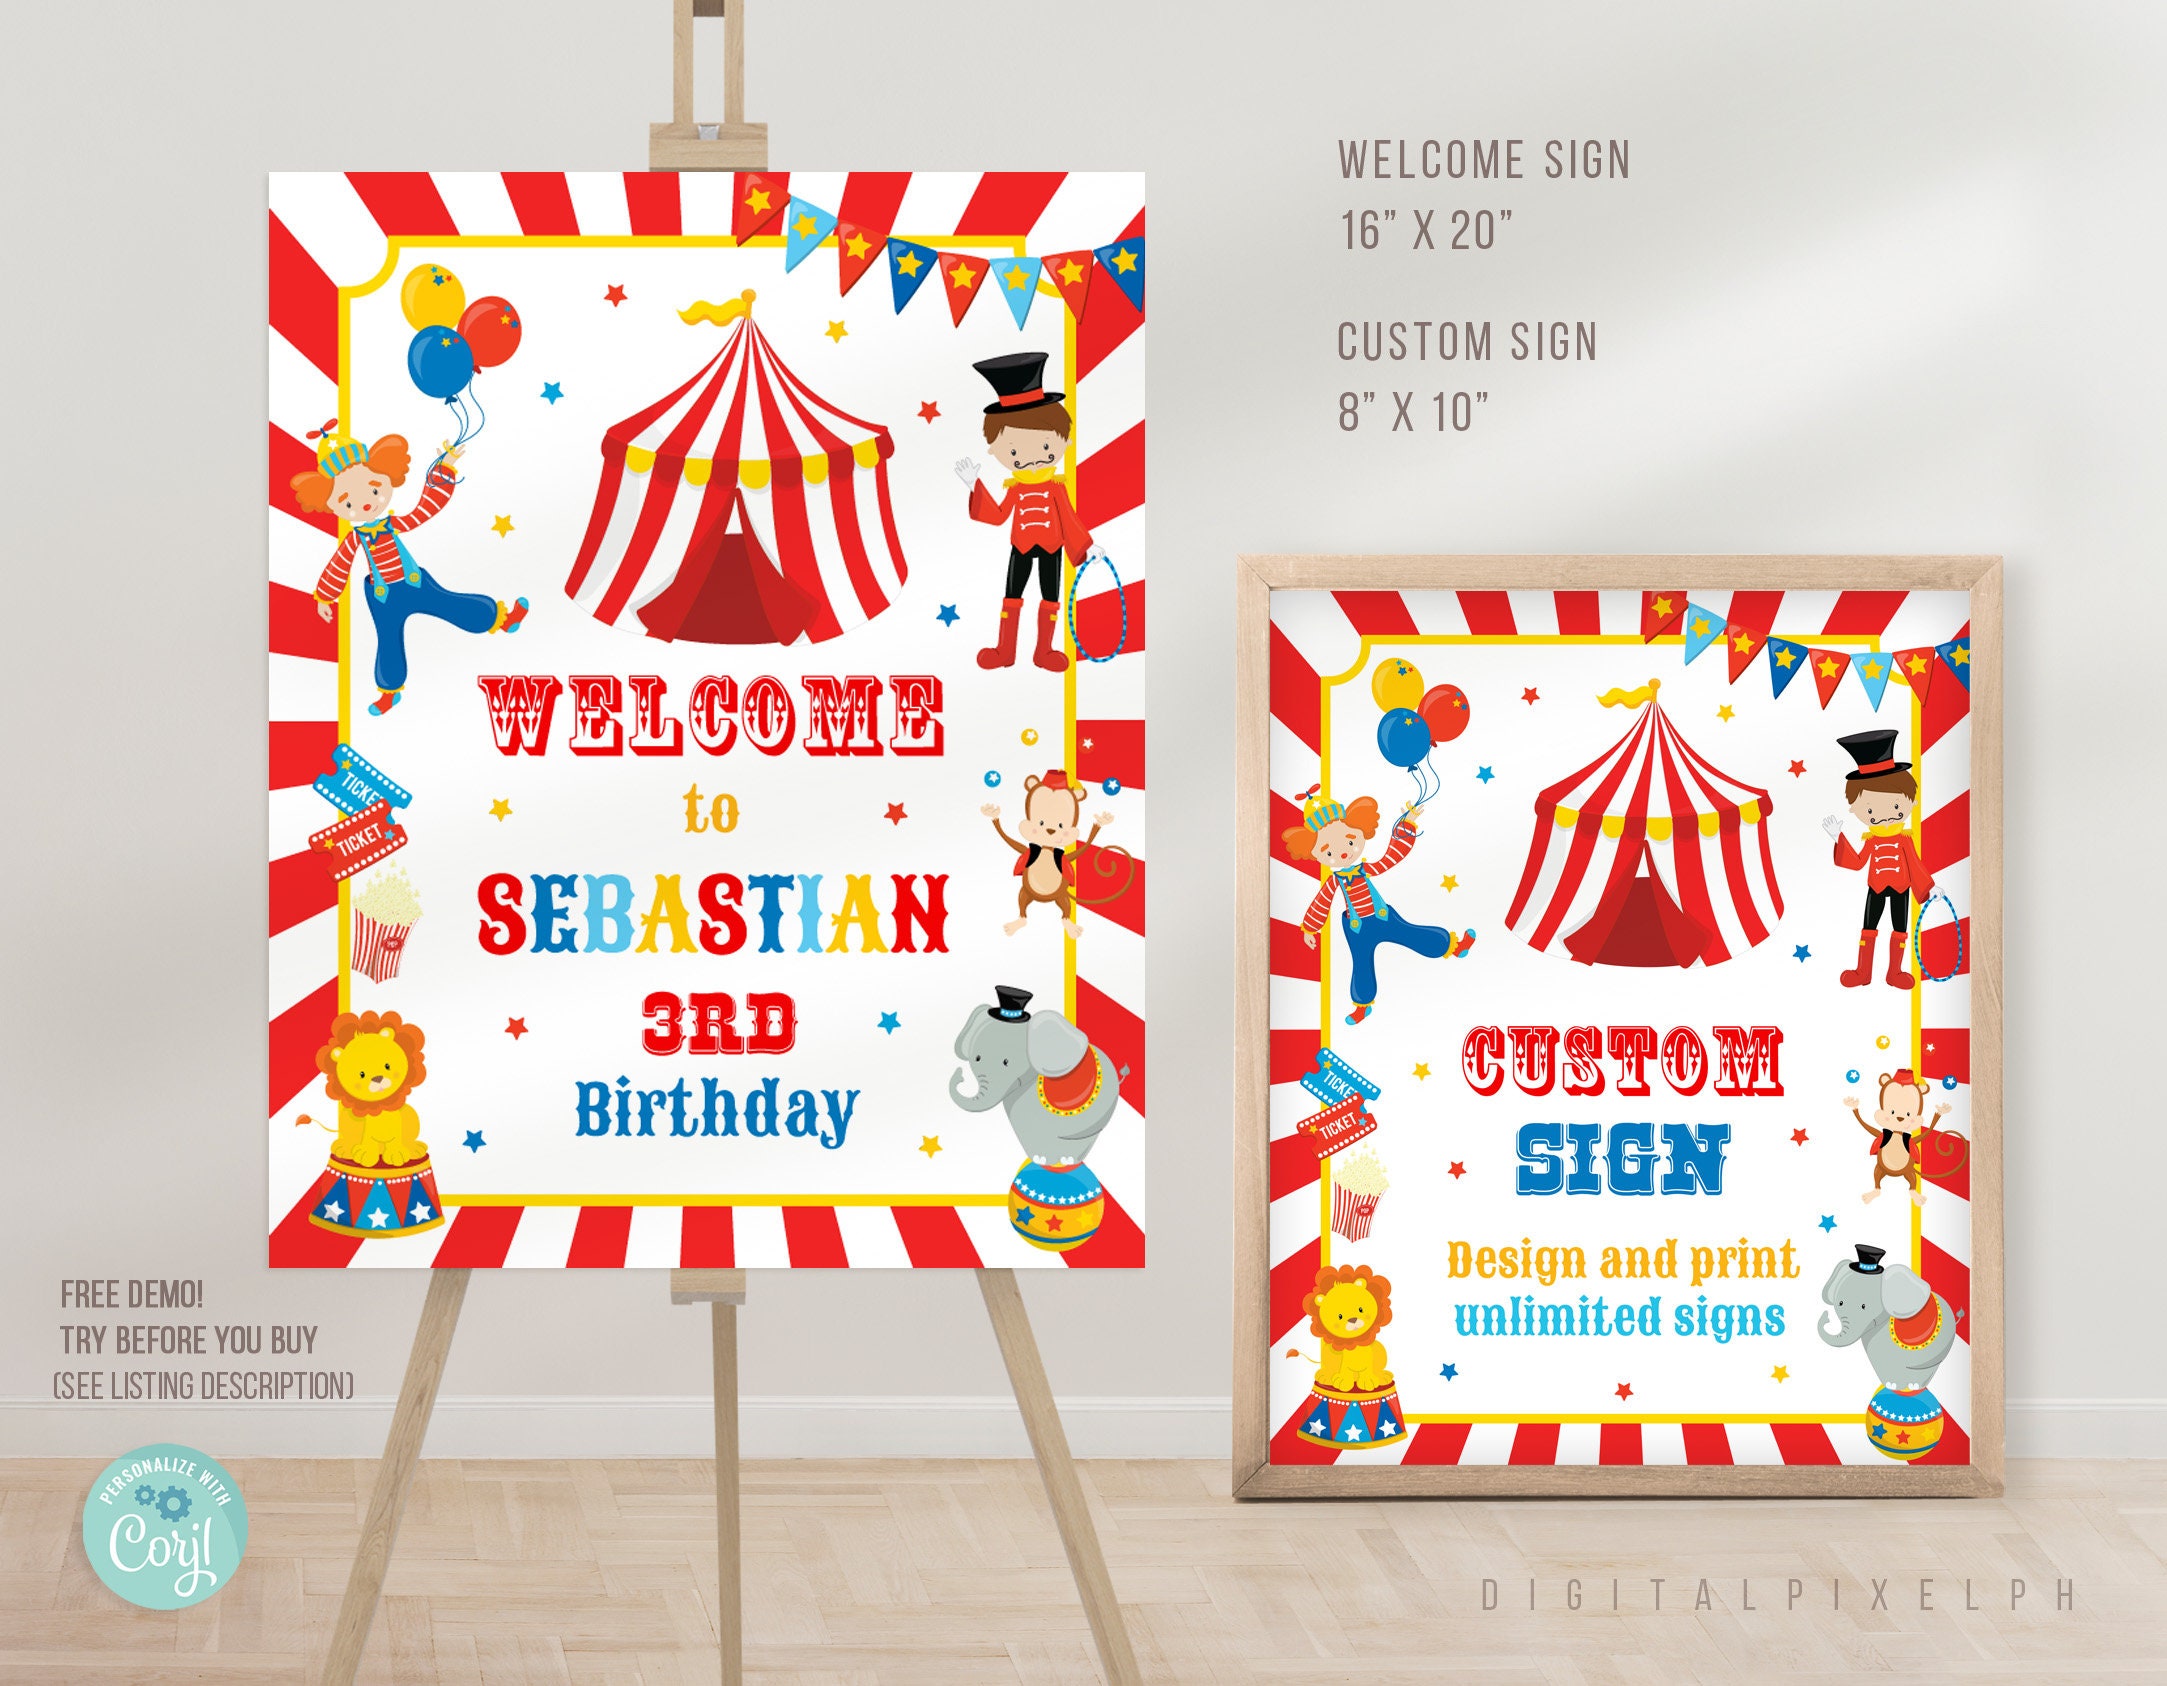 Cartel Bienvenida Cumpleaños Circo, Personalizado - Envío Gratis